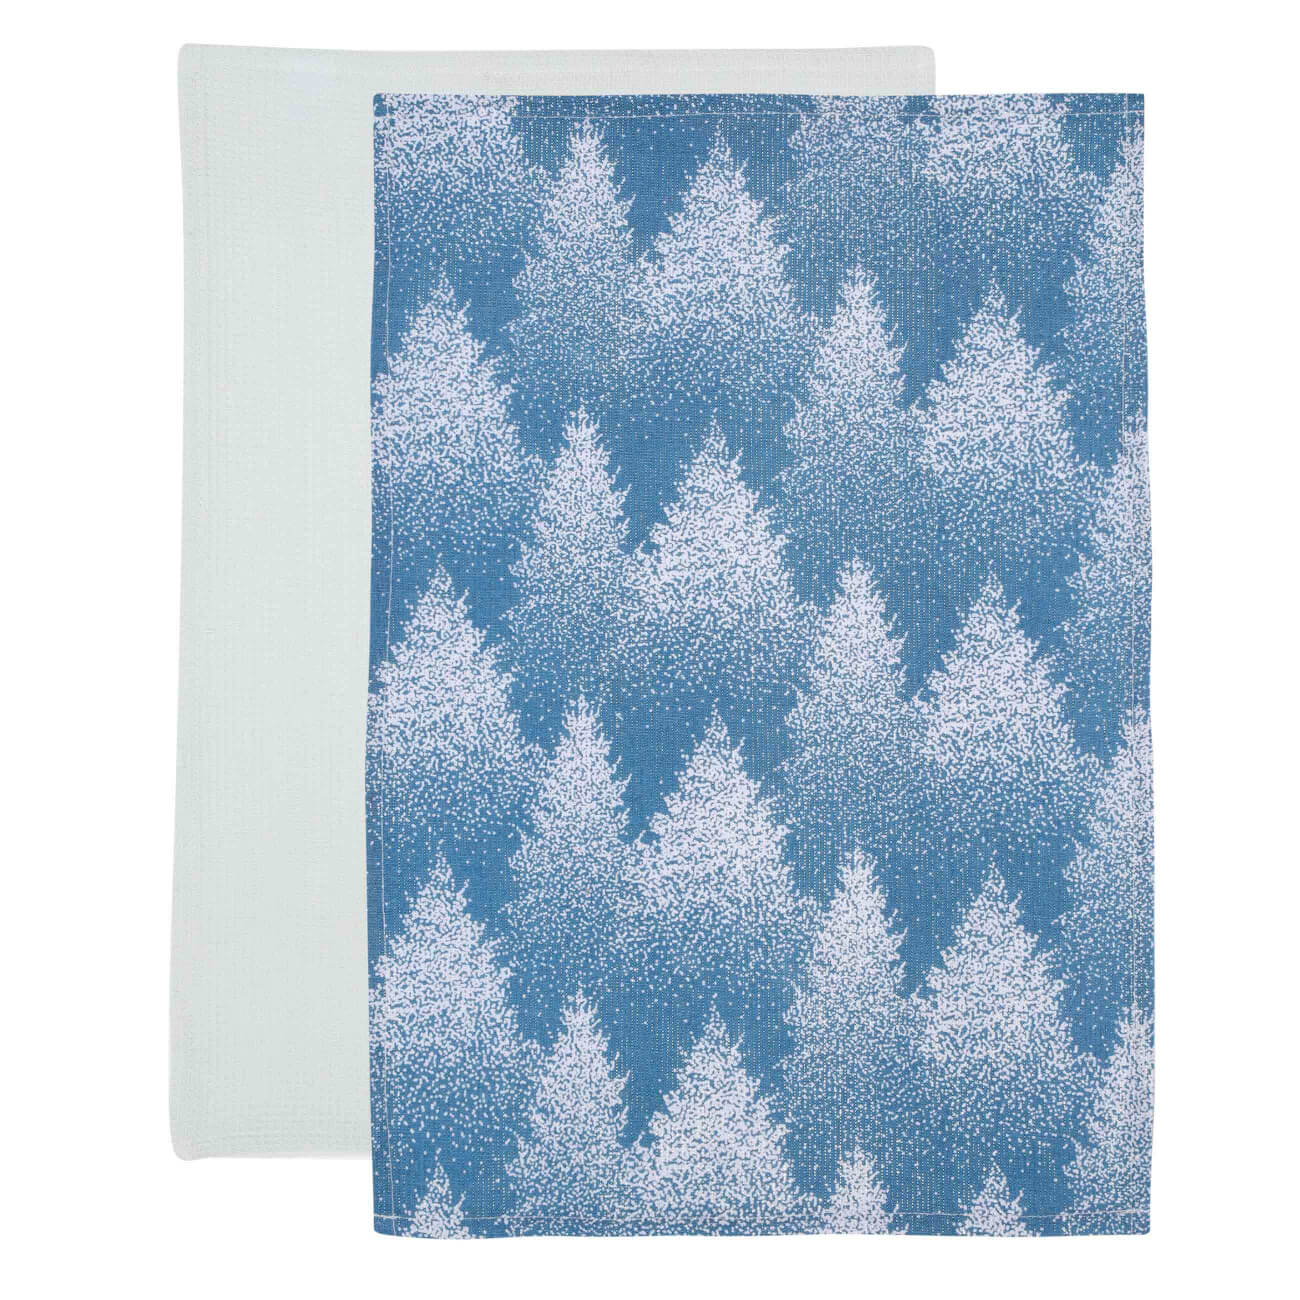 Полотенце кухонное, 40х60 см, 2 шт, хлопок, голубое/белое, Снежные ели, Snowy fir